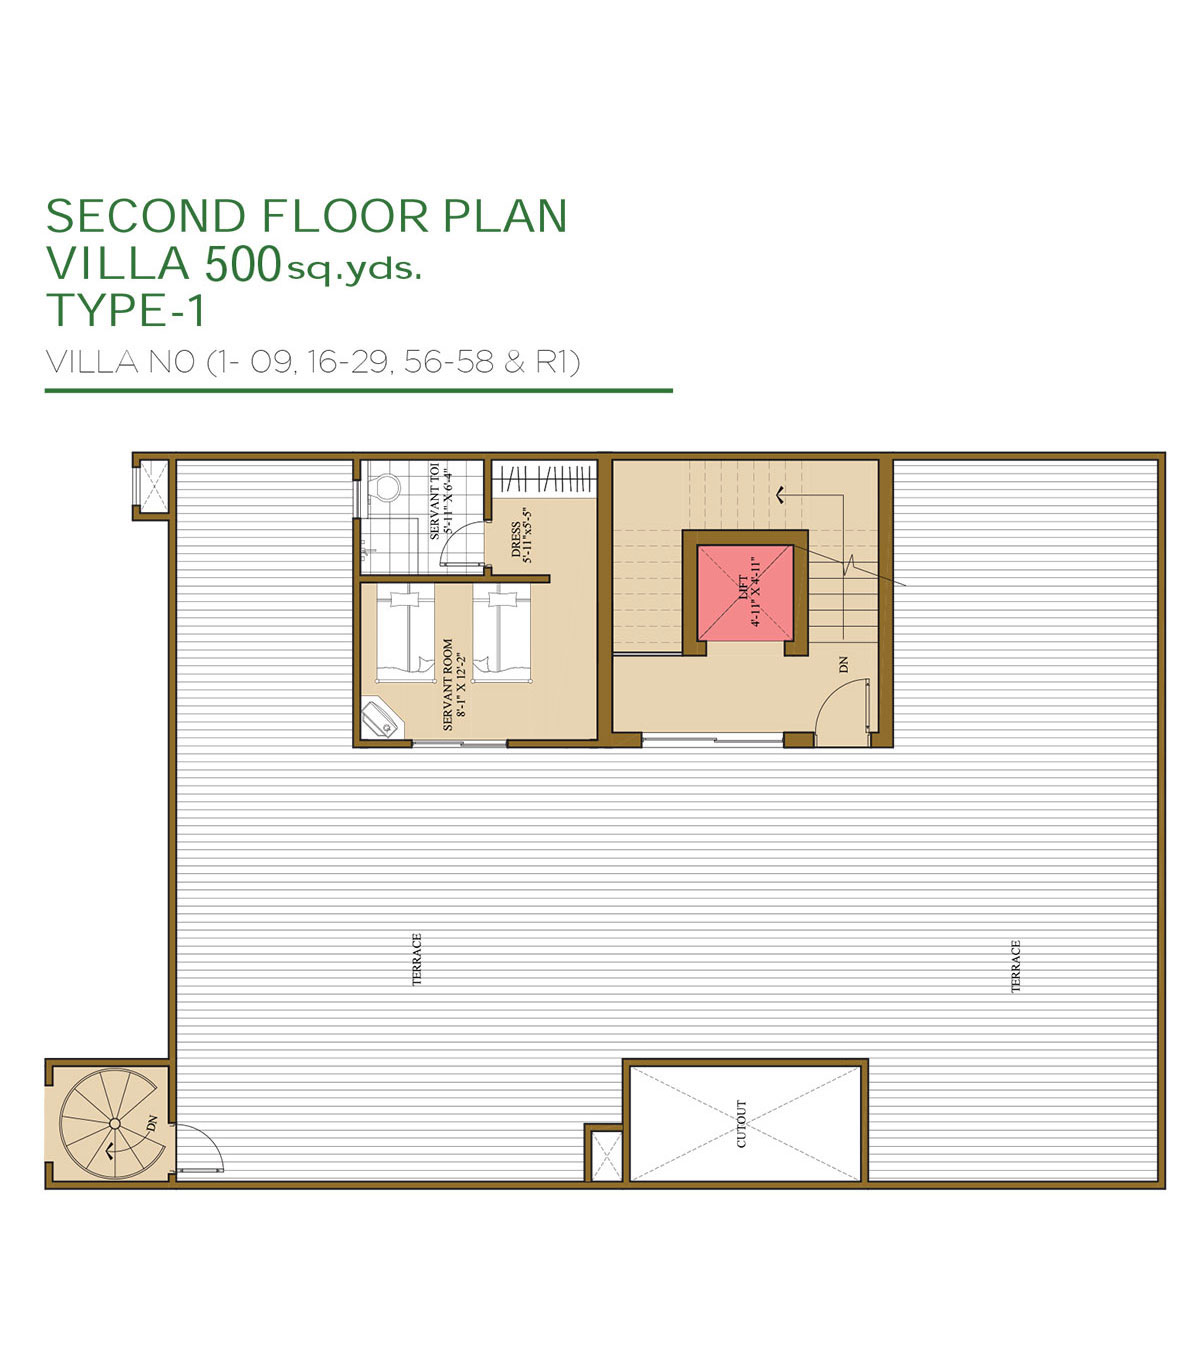 Villa - 500 Sq.Yds (Second Floor Plan)